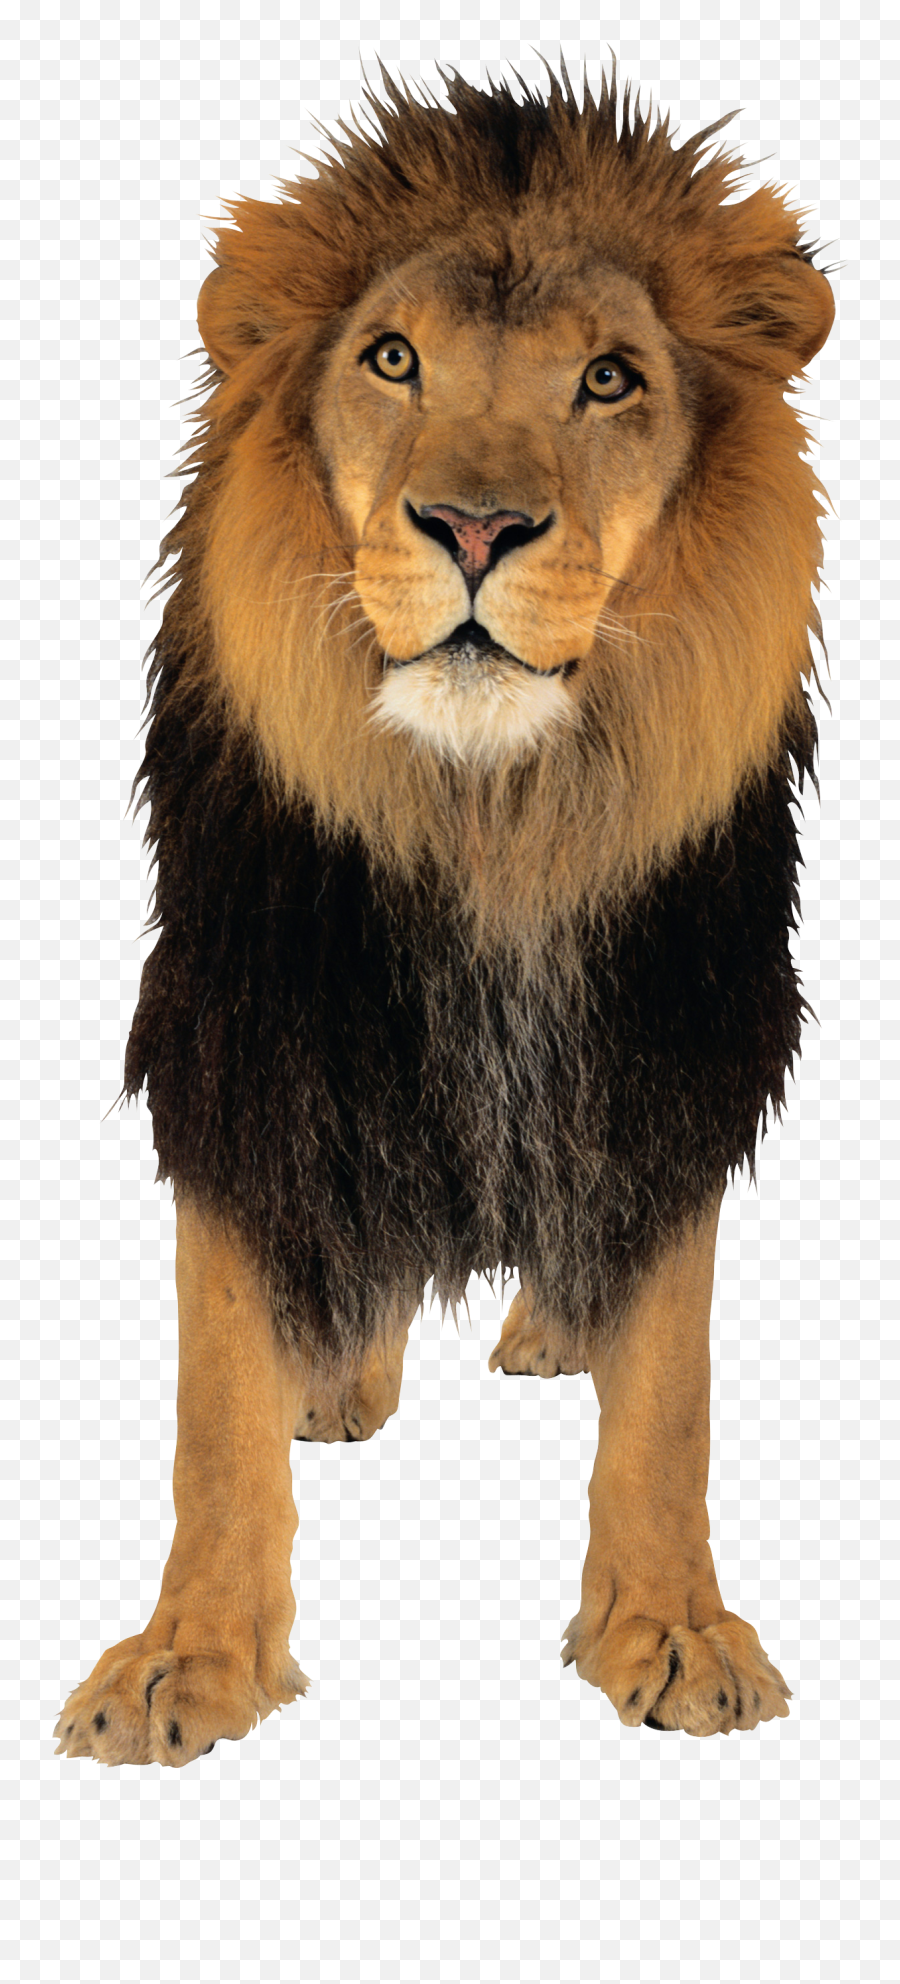 Lion Png Image - Lion Small Png,Lion Transparent